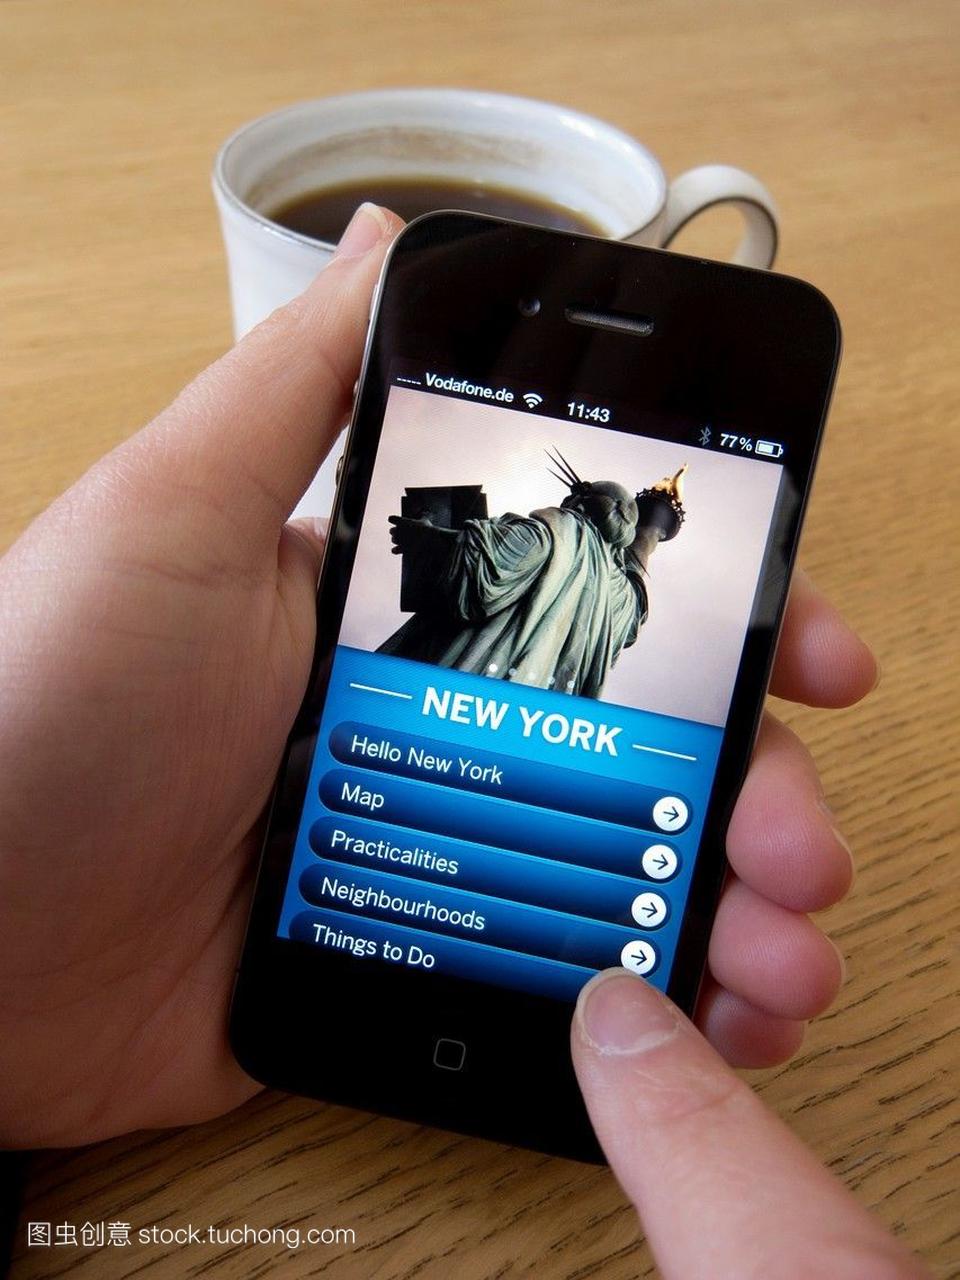 阅读旅游指南到纽约的苹果iphone4g智能手机